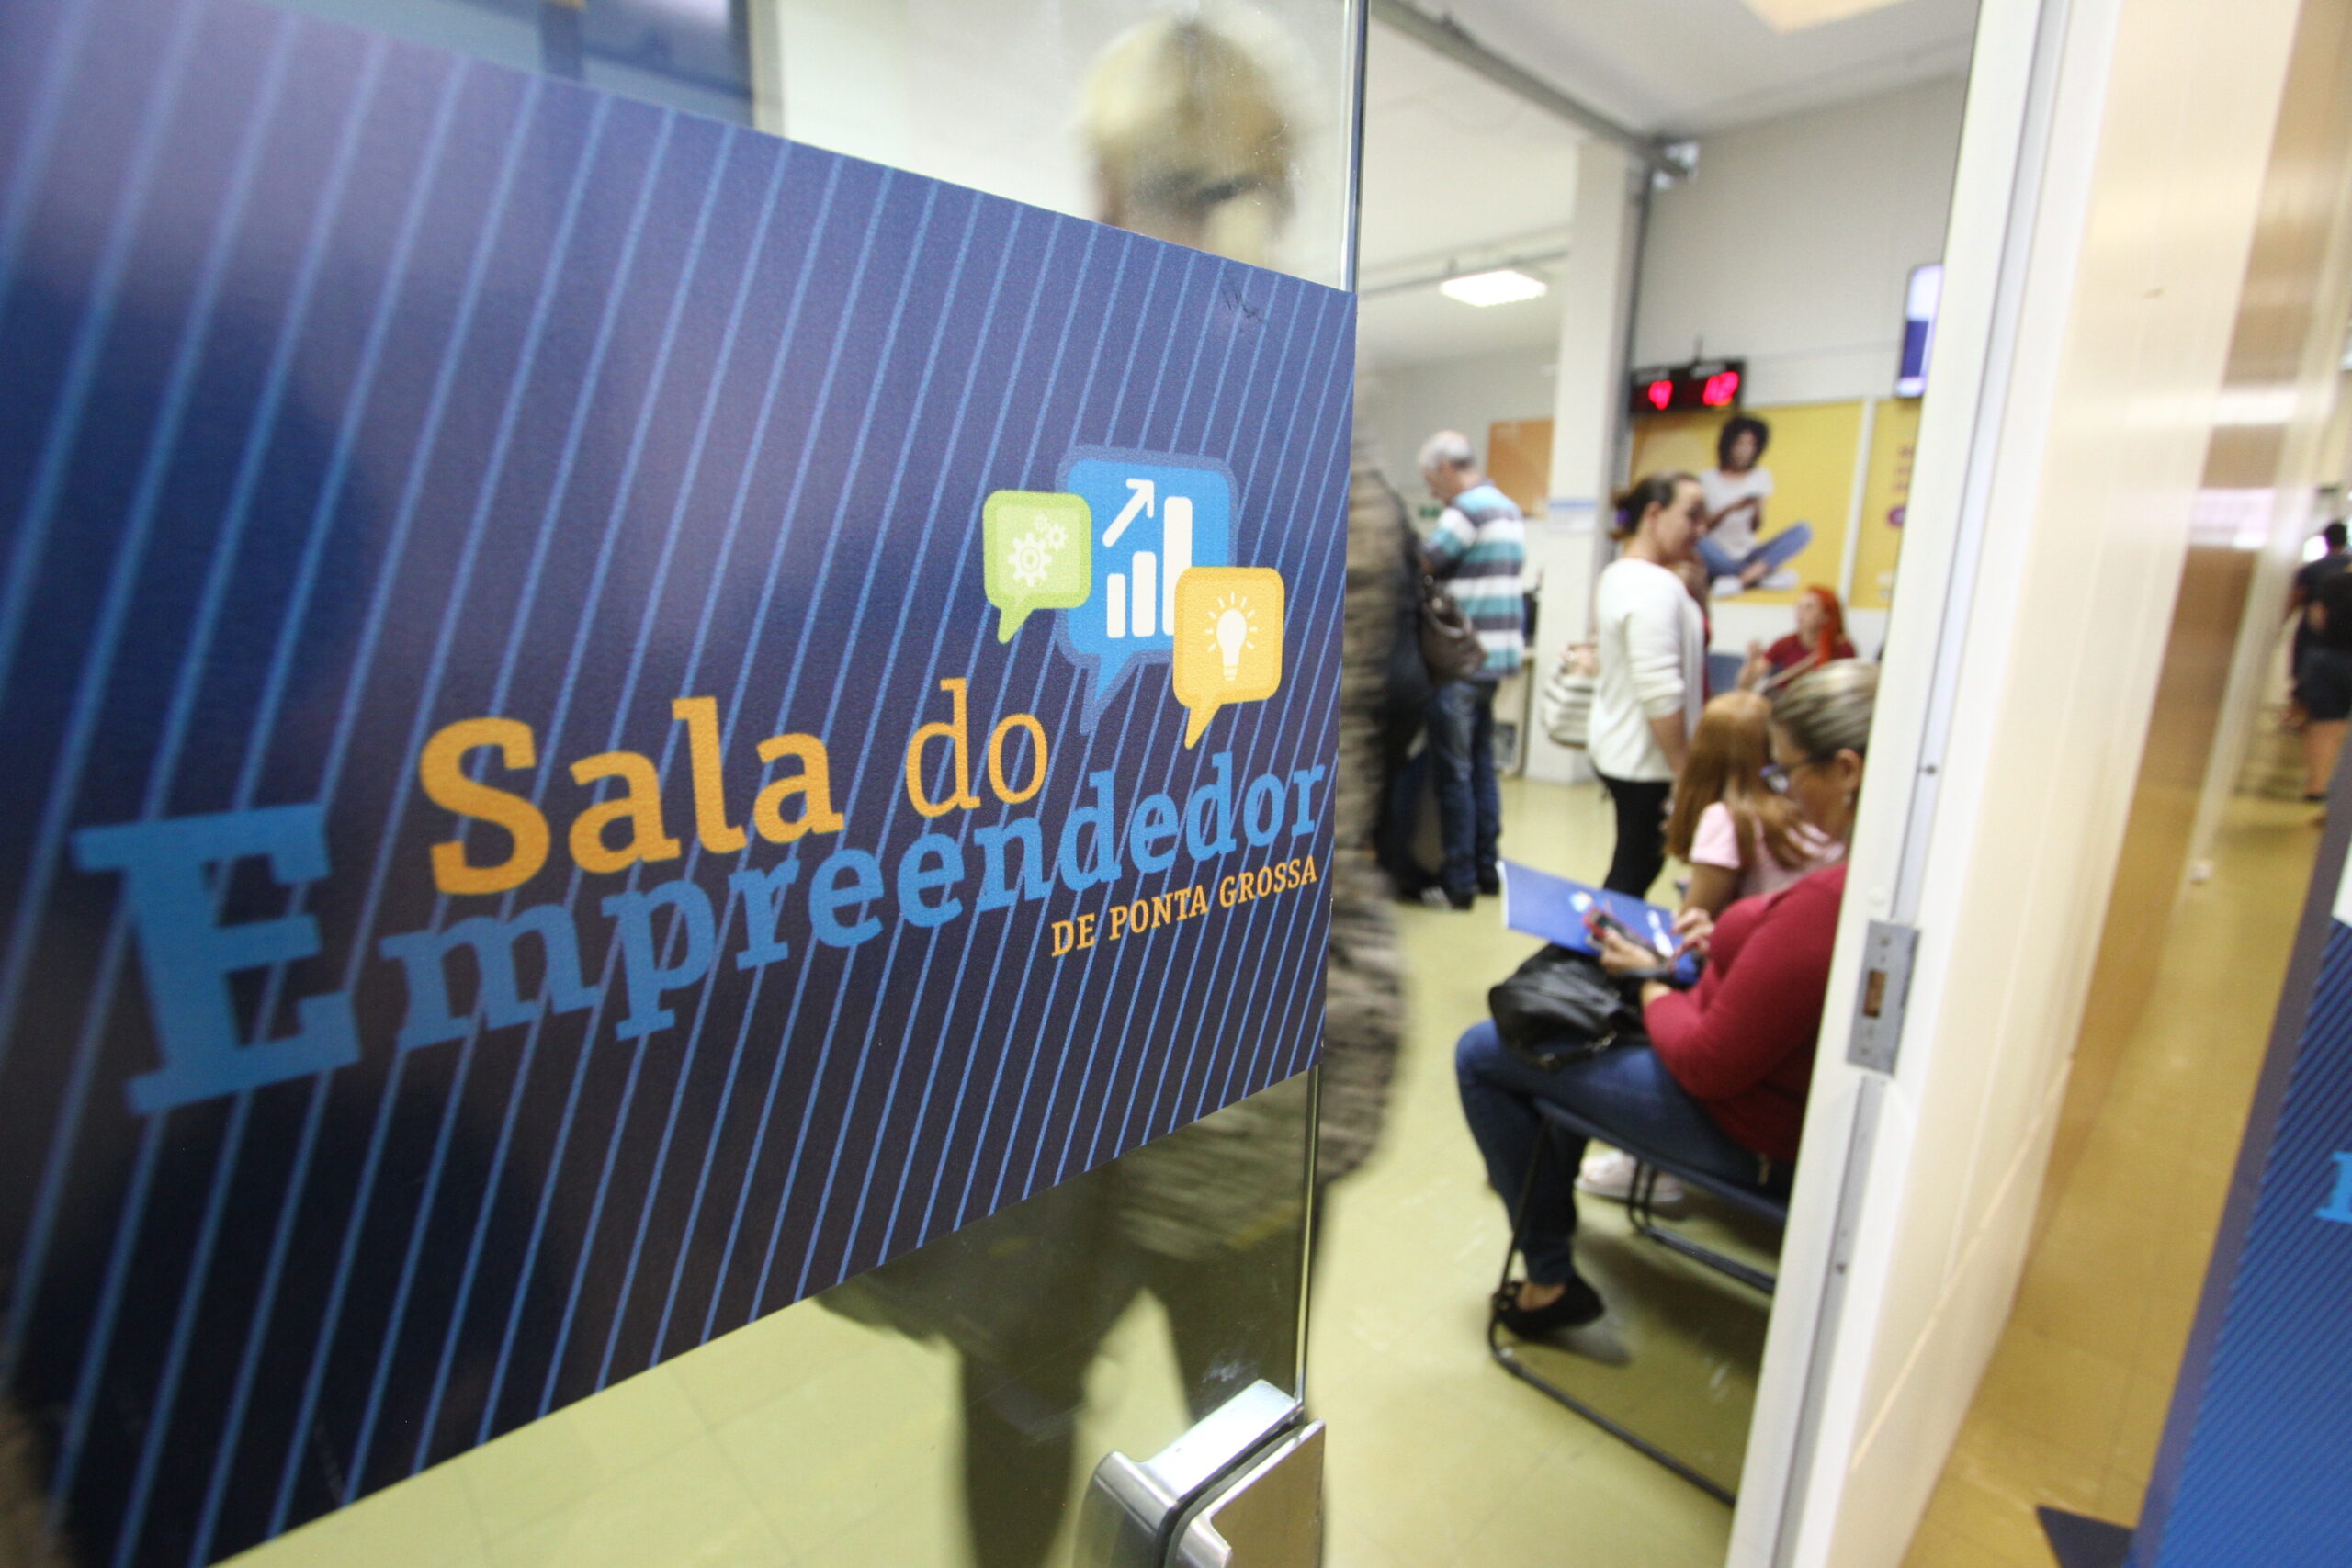 Foto da sala do empreendedor, um dos locais de Ponta grossa que auxilia empresárias a conseguirem crédito da Fomento Paraná